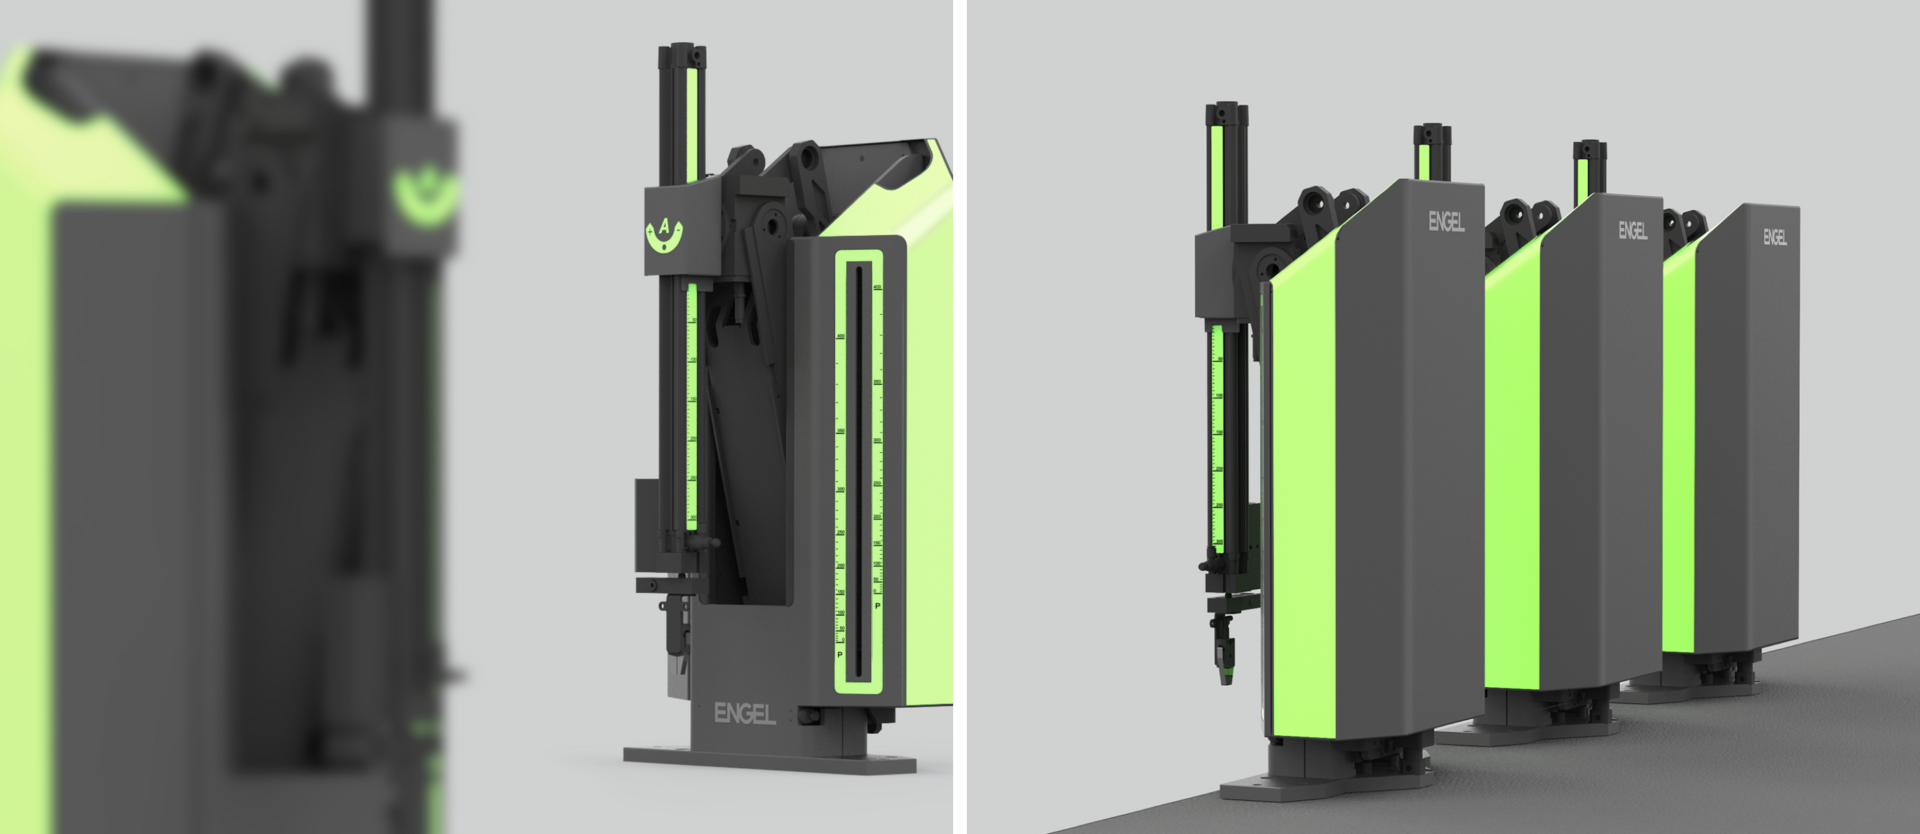 Unser Industrial Design für ENGELs Industrieroboter-Serien Viper und Pic